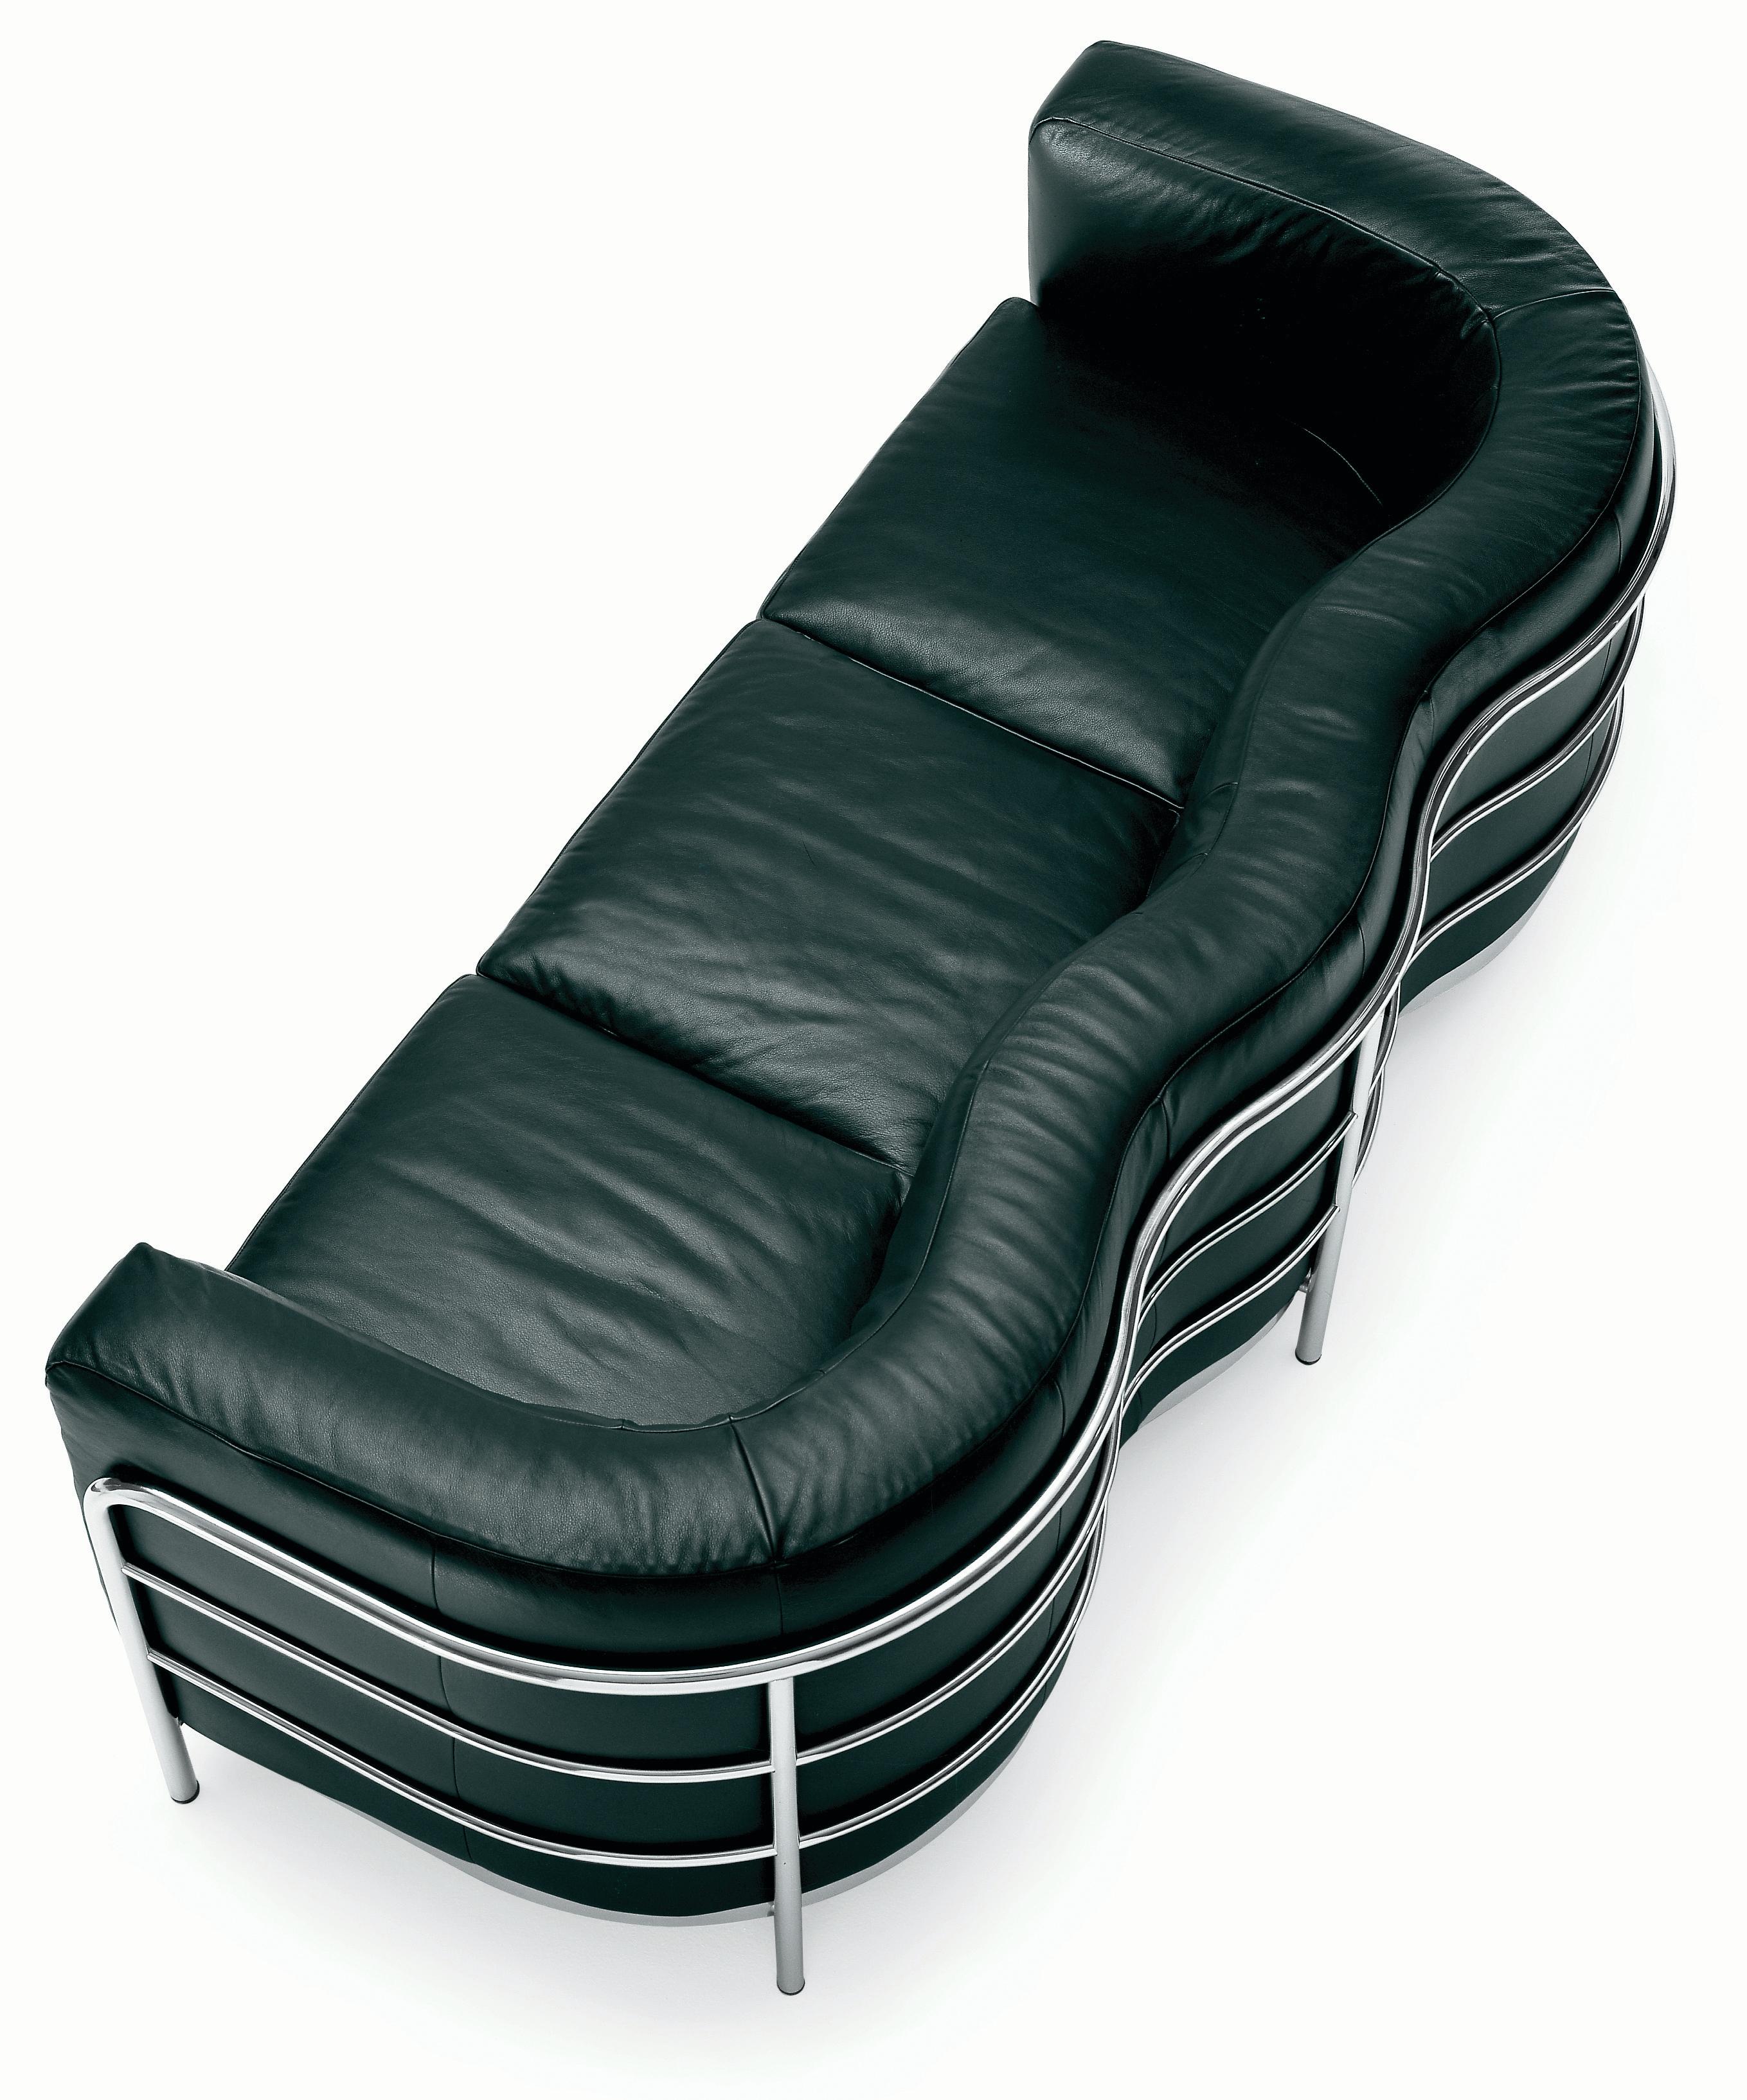 Customizable Leather Zanotta Onda Sofa by De Pas, D'Urbino, Lomazzi In New Condition For Sale In New York, NY